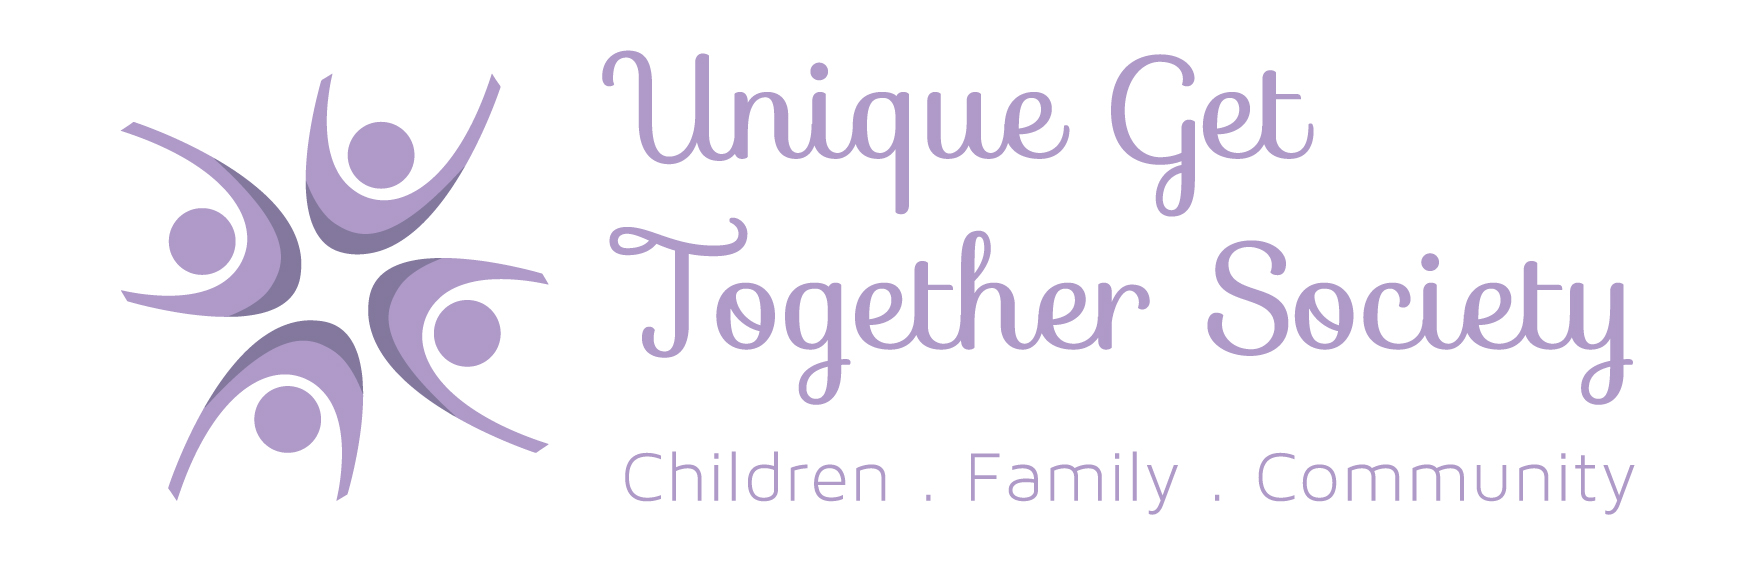 Société Unique Get Together logo